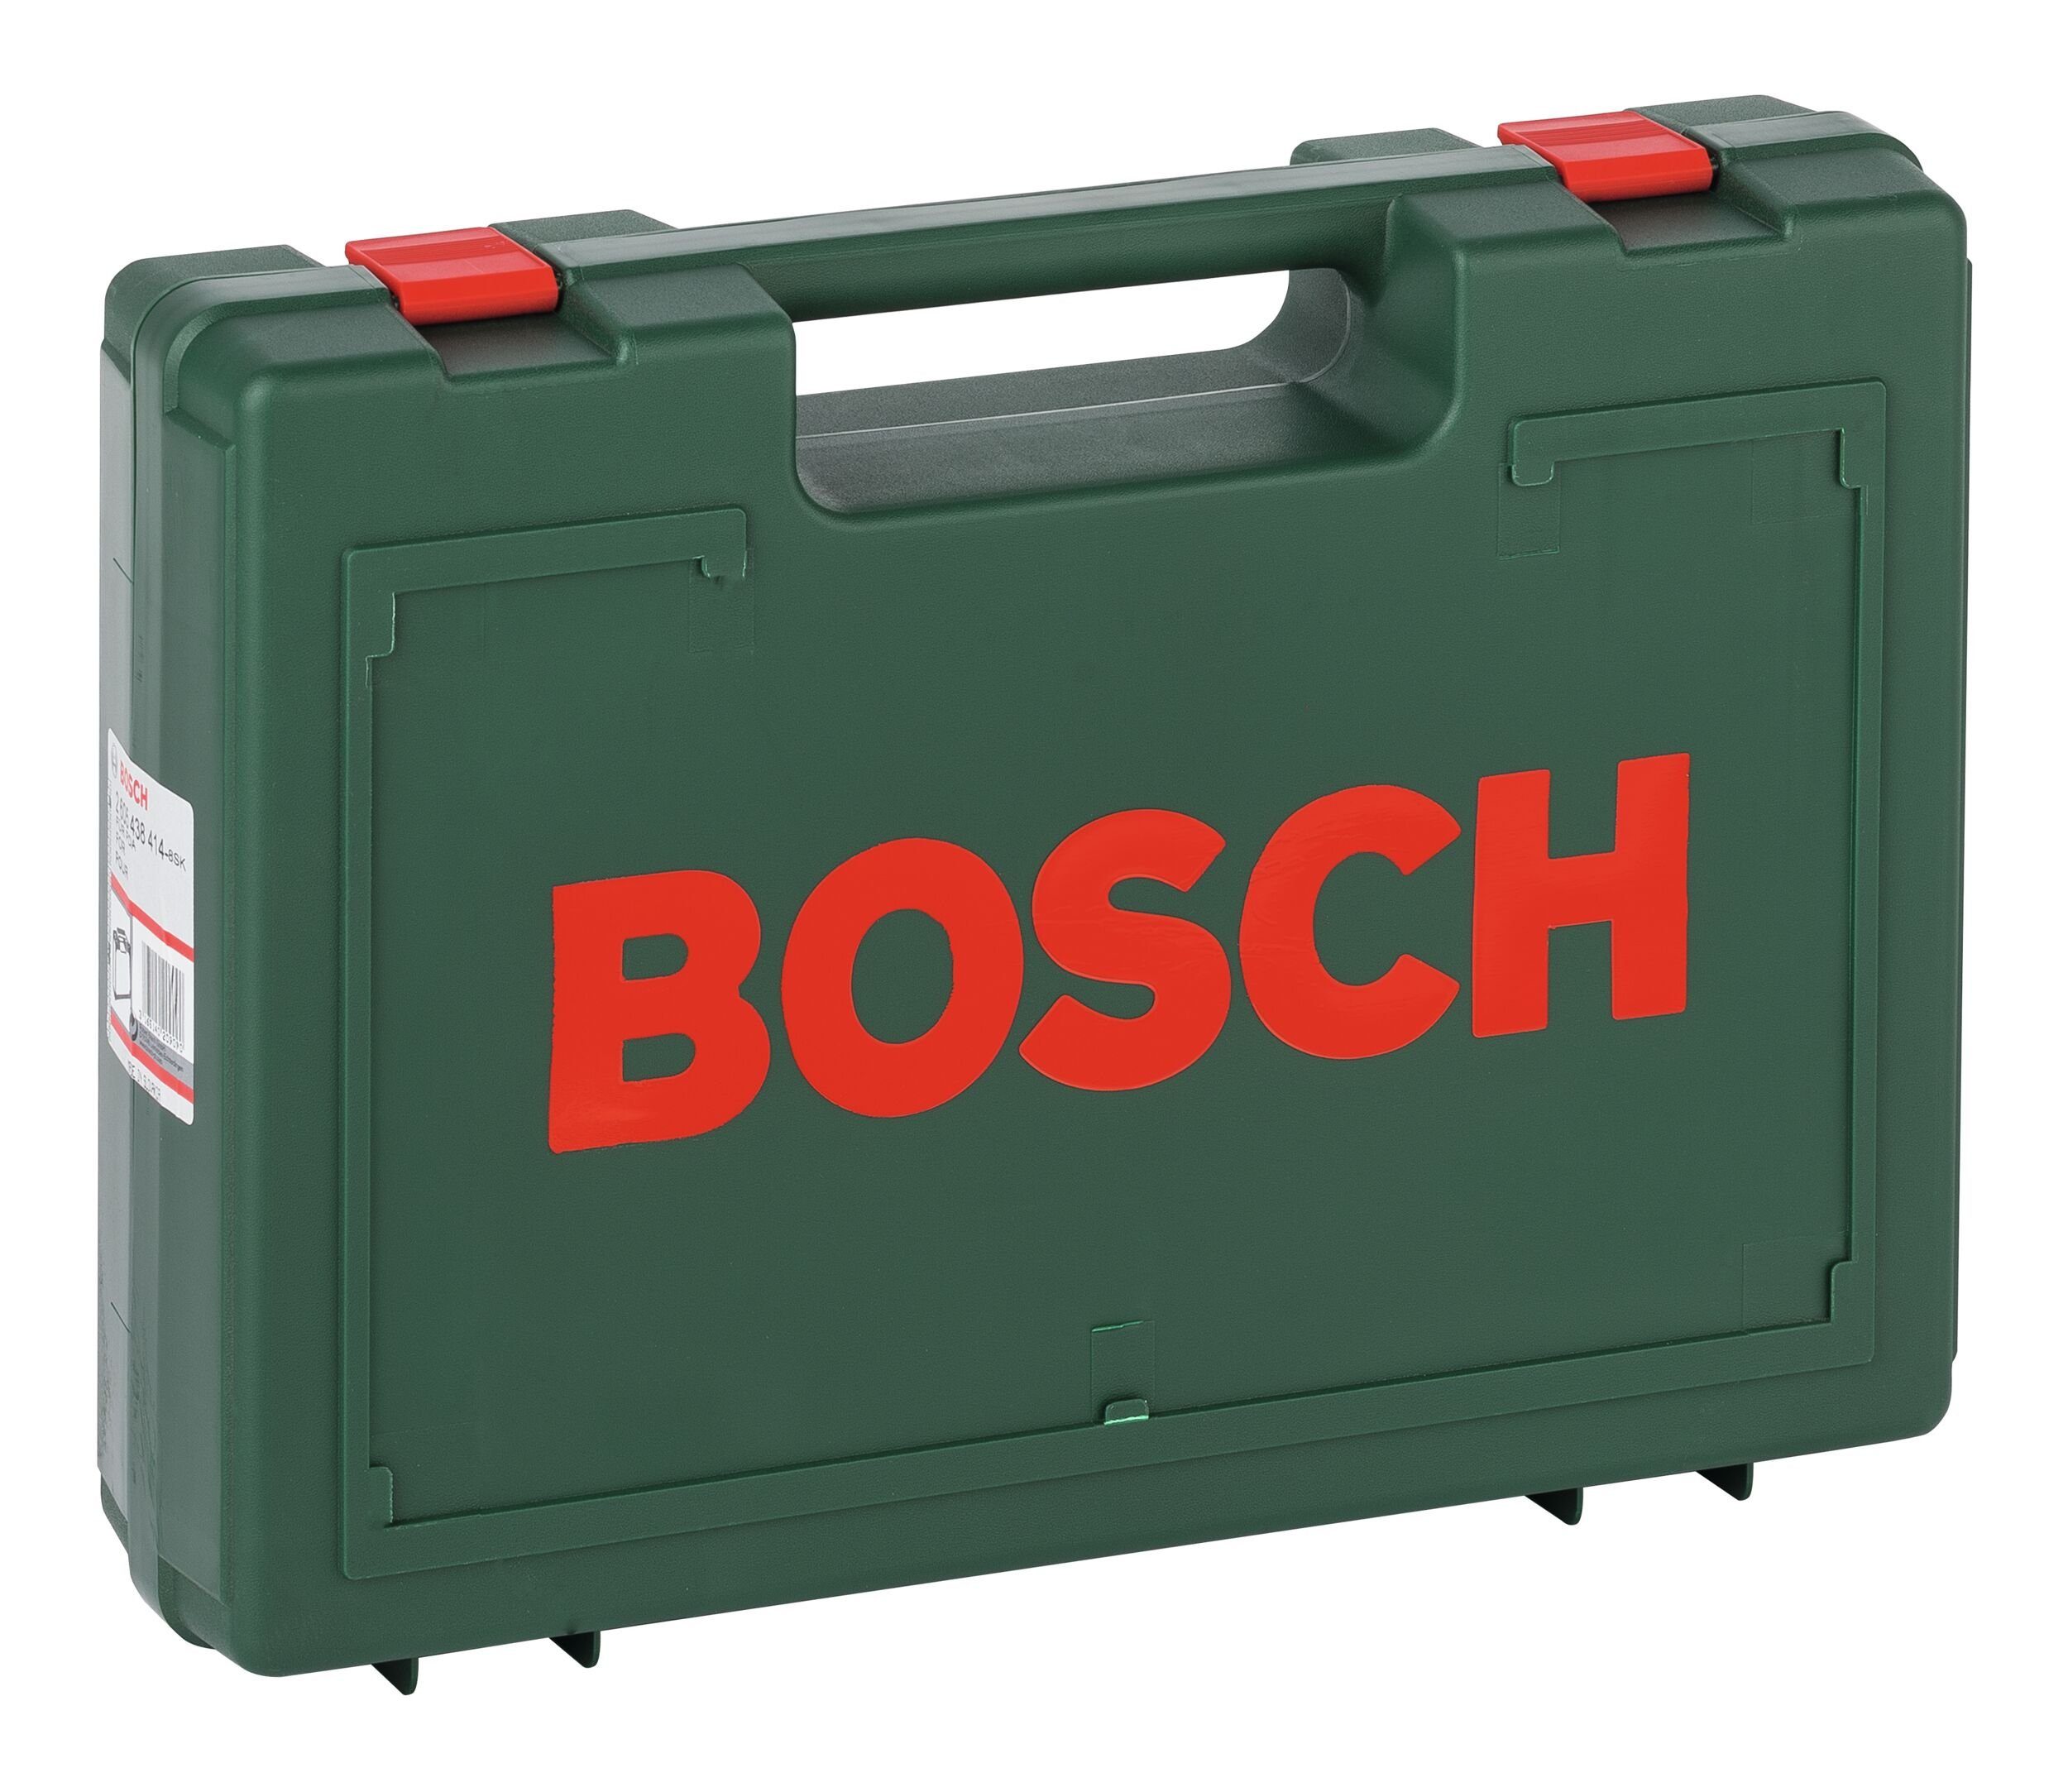 Bosch Home & Garden x mm 300 Werkzeugkoffer, - Kunststoffkoffer 391 110 x